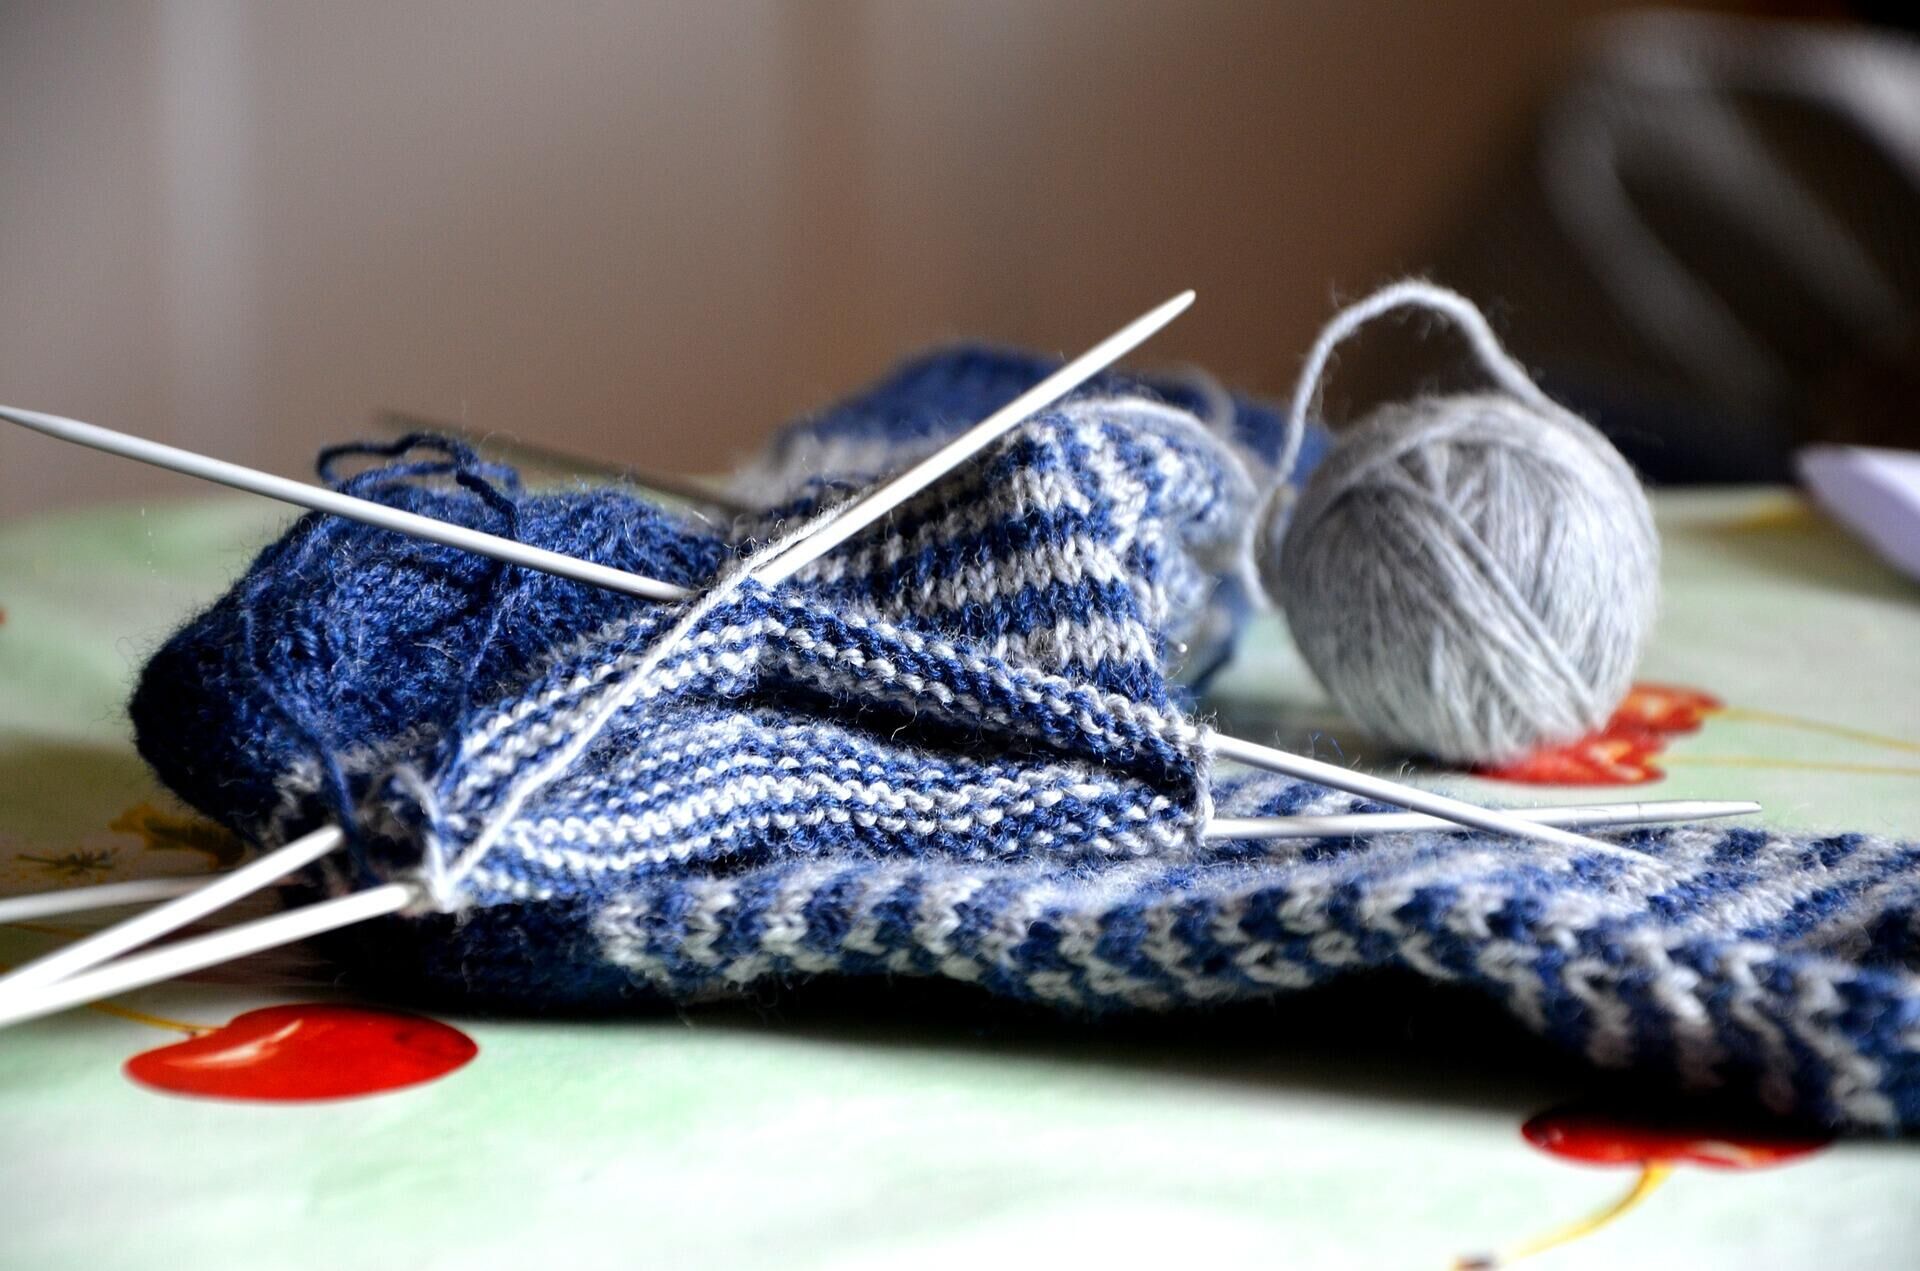 Вязание носков спицами для начинающих пошагово | «Пряжа для города»